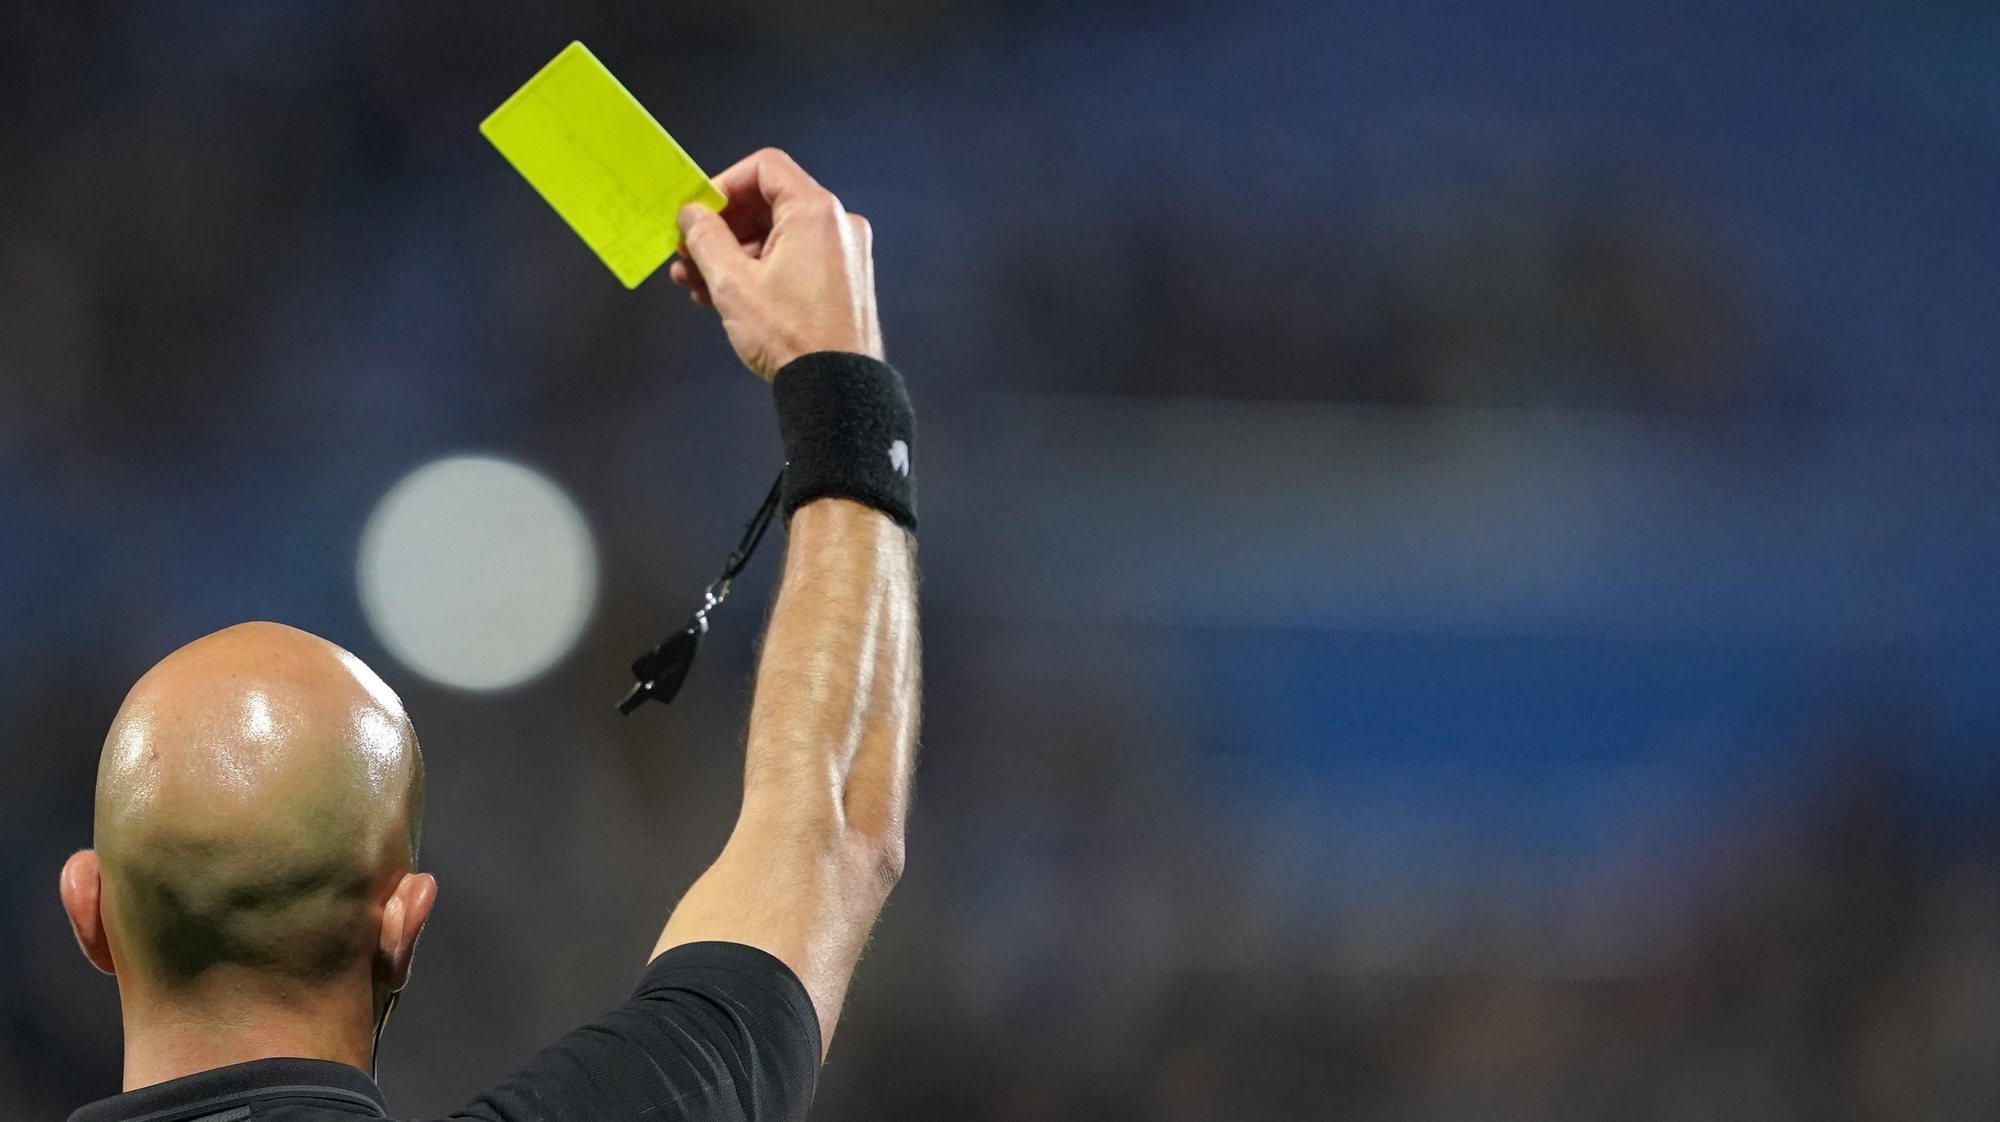 O árbitro Luis Godinho mostra um cartão amarelo durante o jogo entre o Vizela e o Famalicão a contar para a Primeira Liga de Futebol realizado no Estádio do Futebol Clube de Vizela, 18  de março de 2022. HUGO DELGADO/LUSA